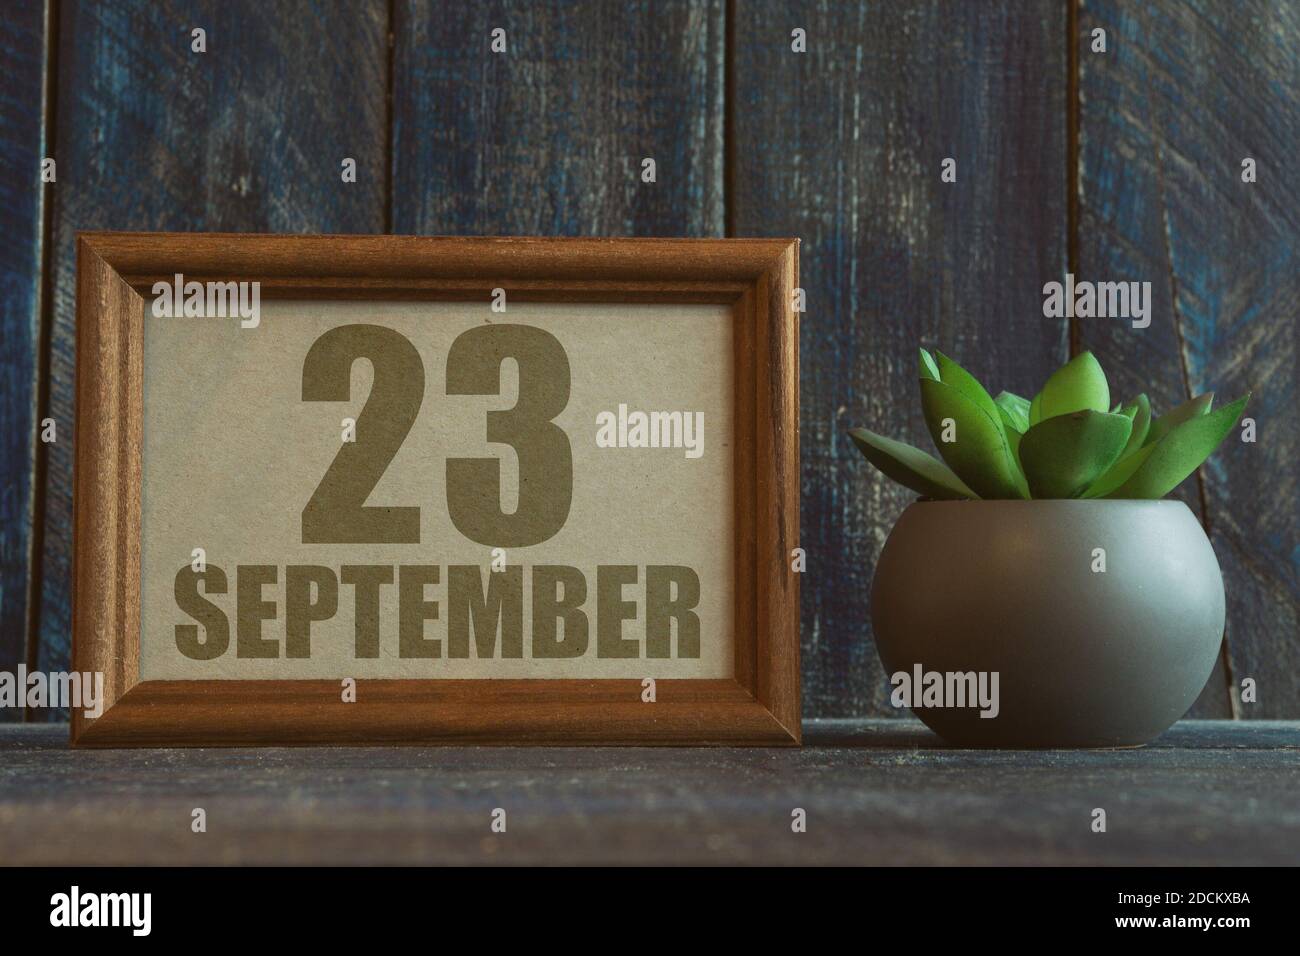 september. Tag 23 des Monats, Datum im Rahmen neben Sukkulente auf Holzhintergrund Herbstmonat, Tag des Jahres Konzept Stockfoto